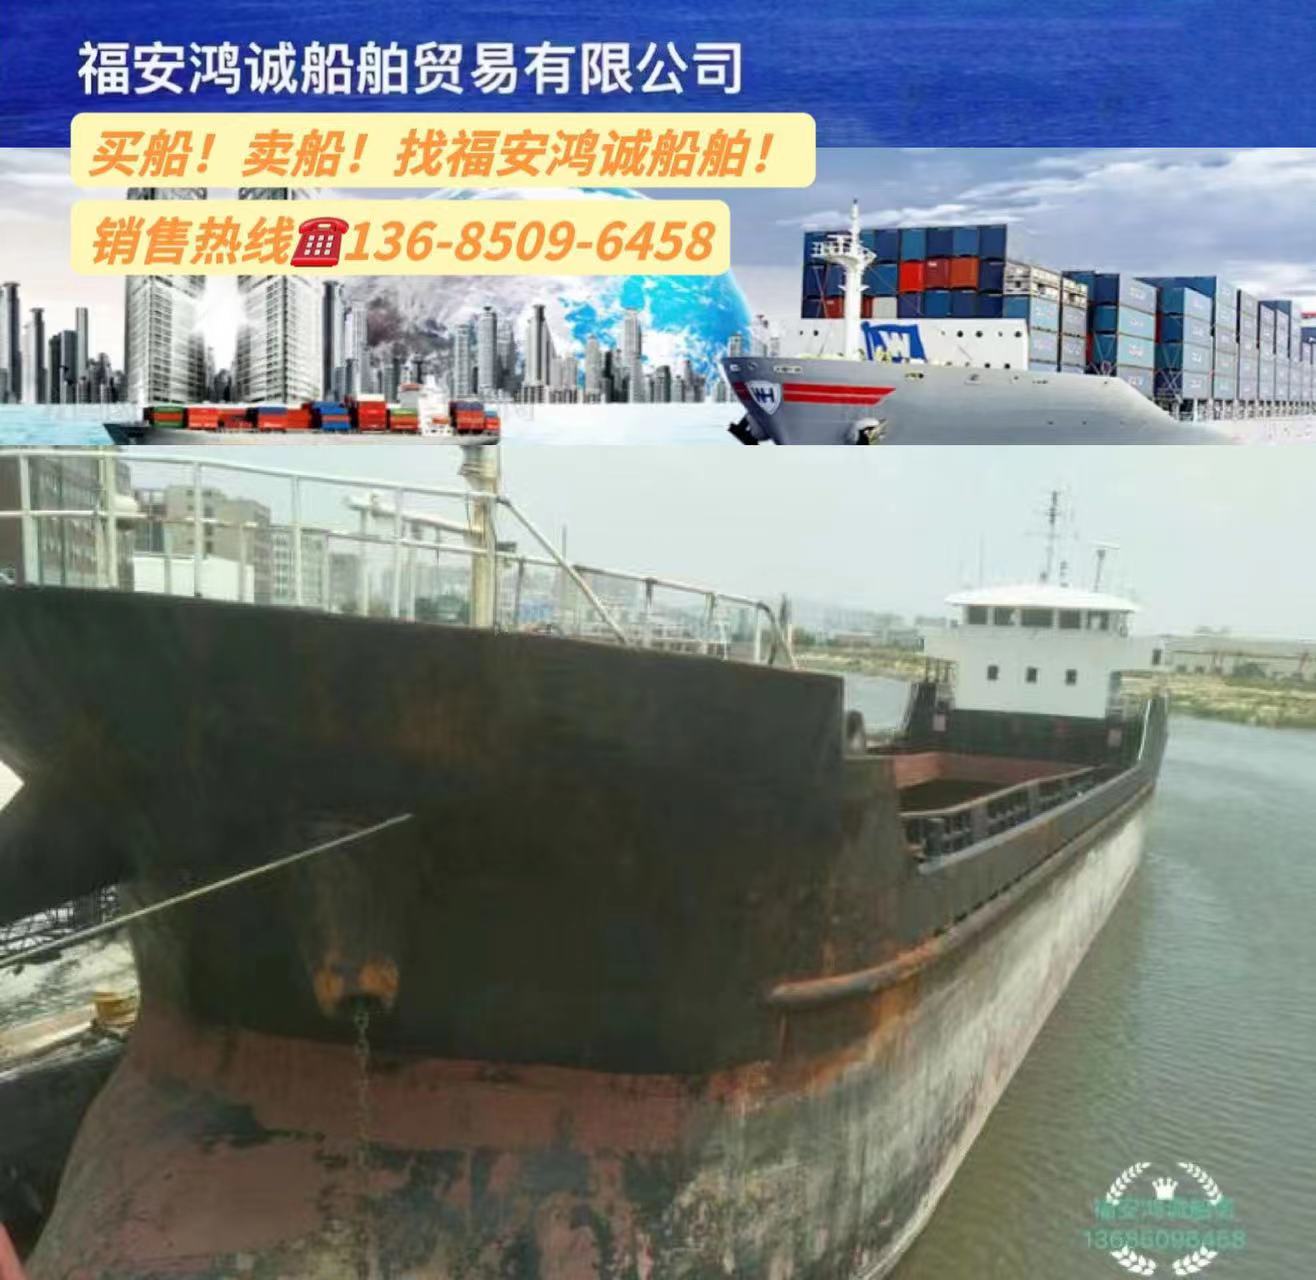 出售实载1350吨干货船： 通舱结构 2011年8月安徽建造/